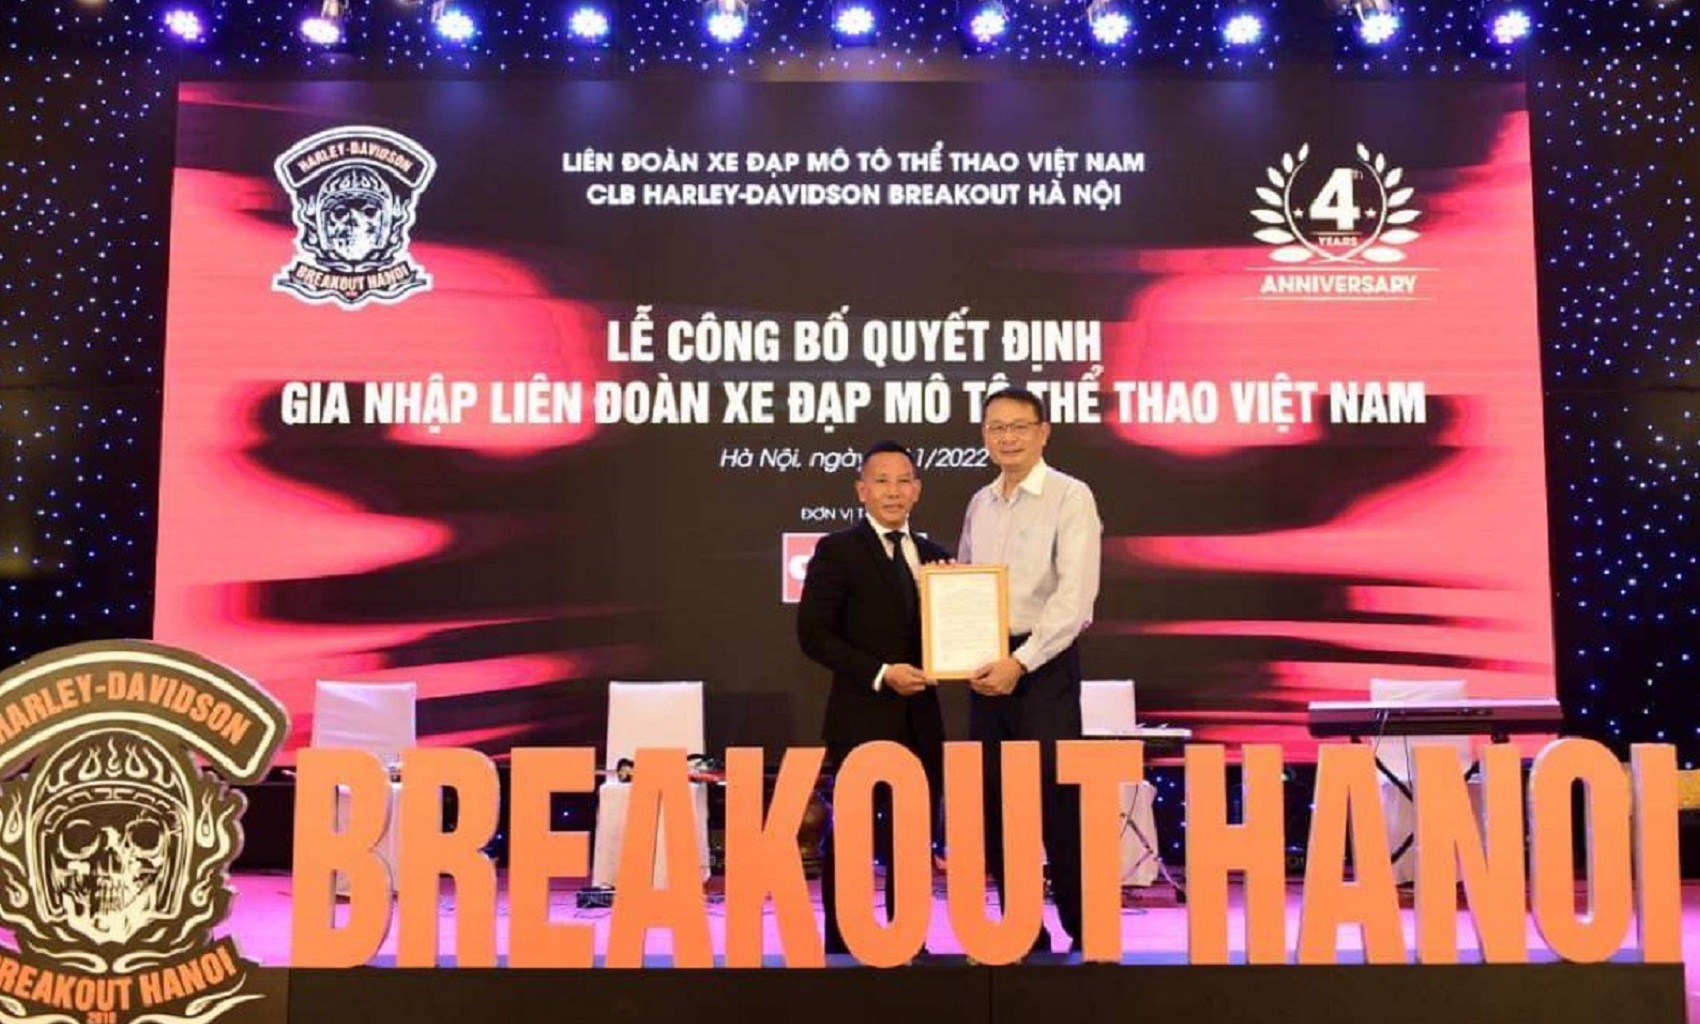 Câu lạc bộ Harley Davidson Breakout Hà Nội gia nhập Liên đoàn Xe đạp Mô tô thể thao Việt Nam